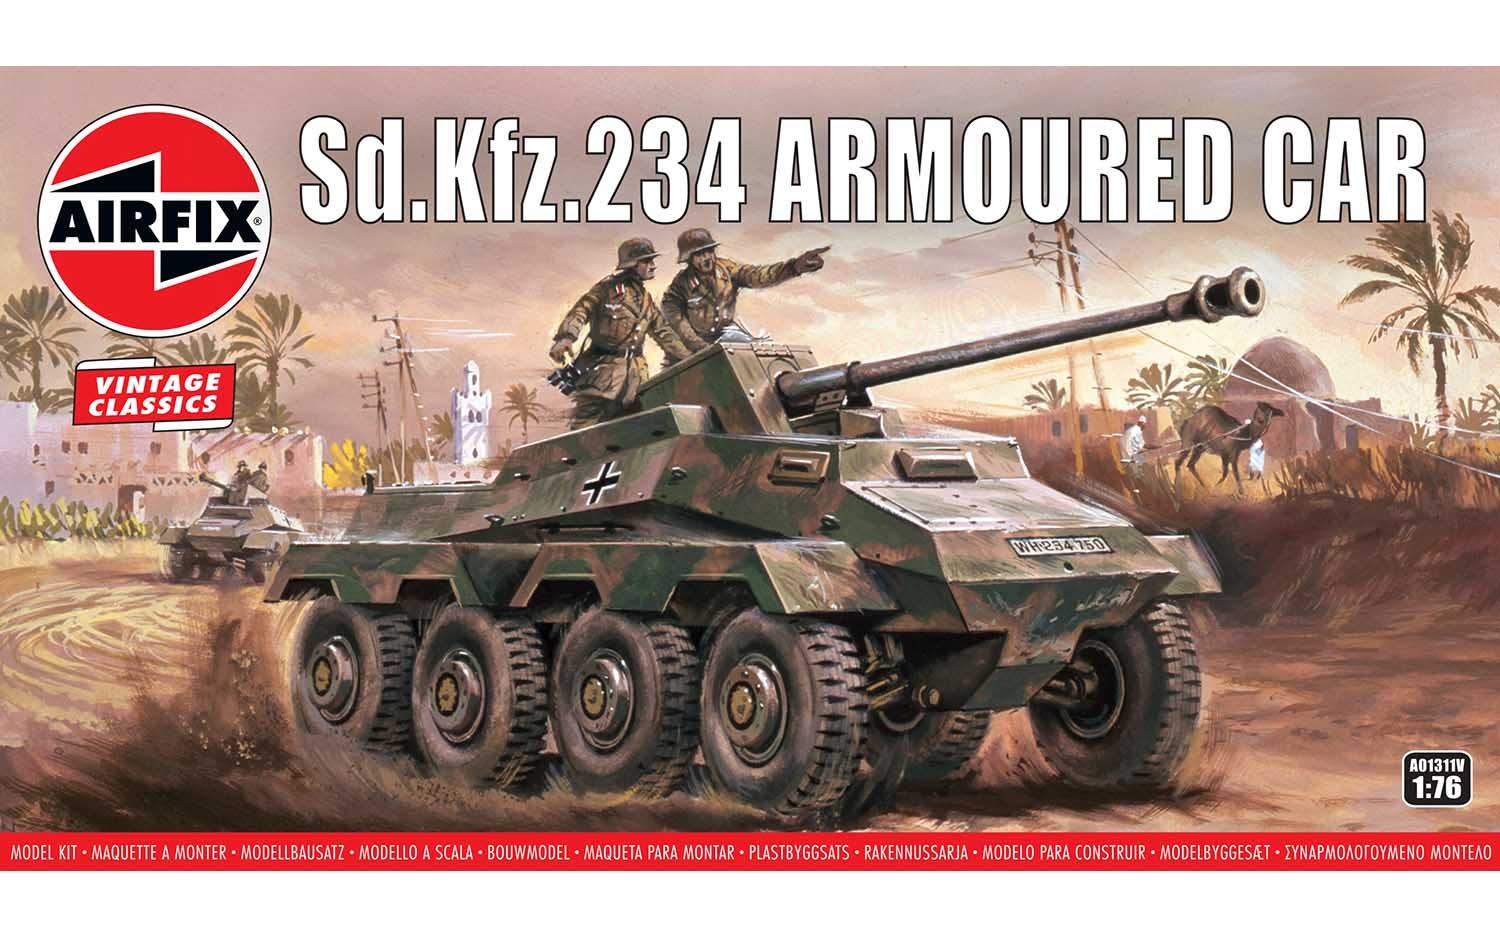 Airfix A01311V sd.kfz.234 armoured car 1:76